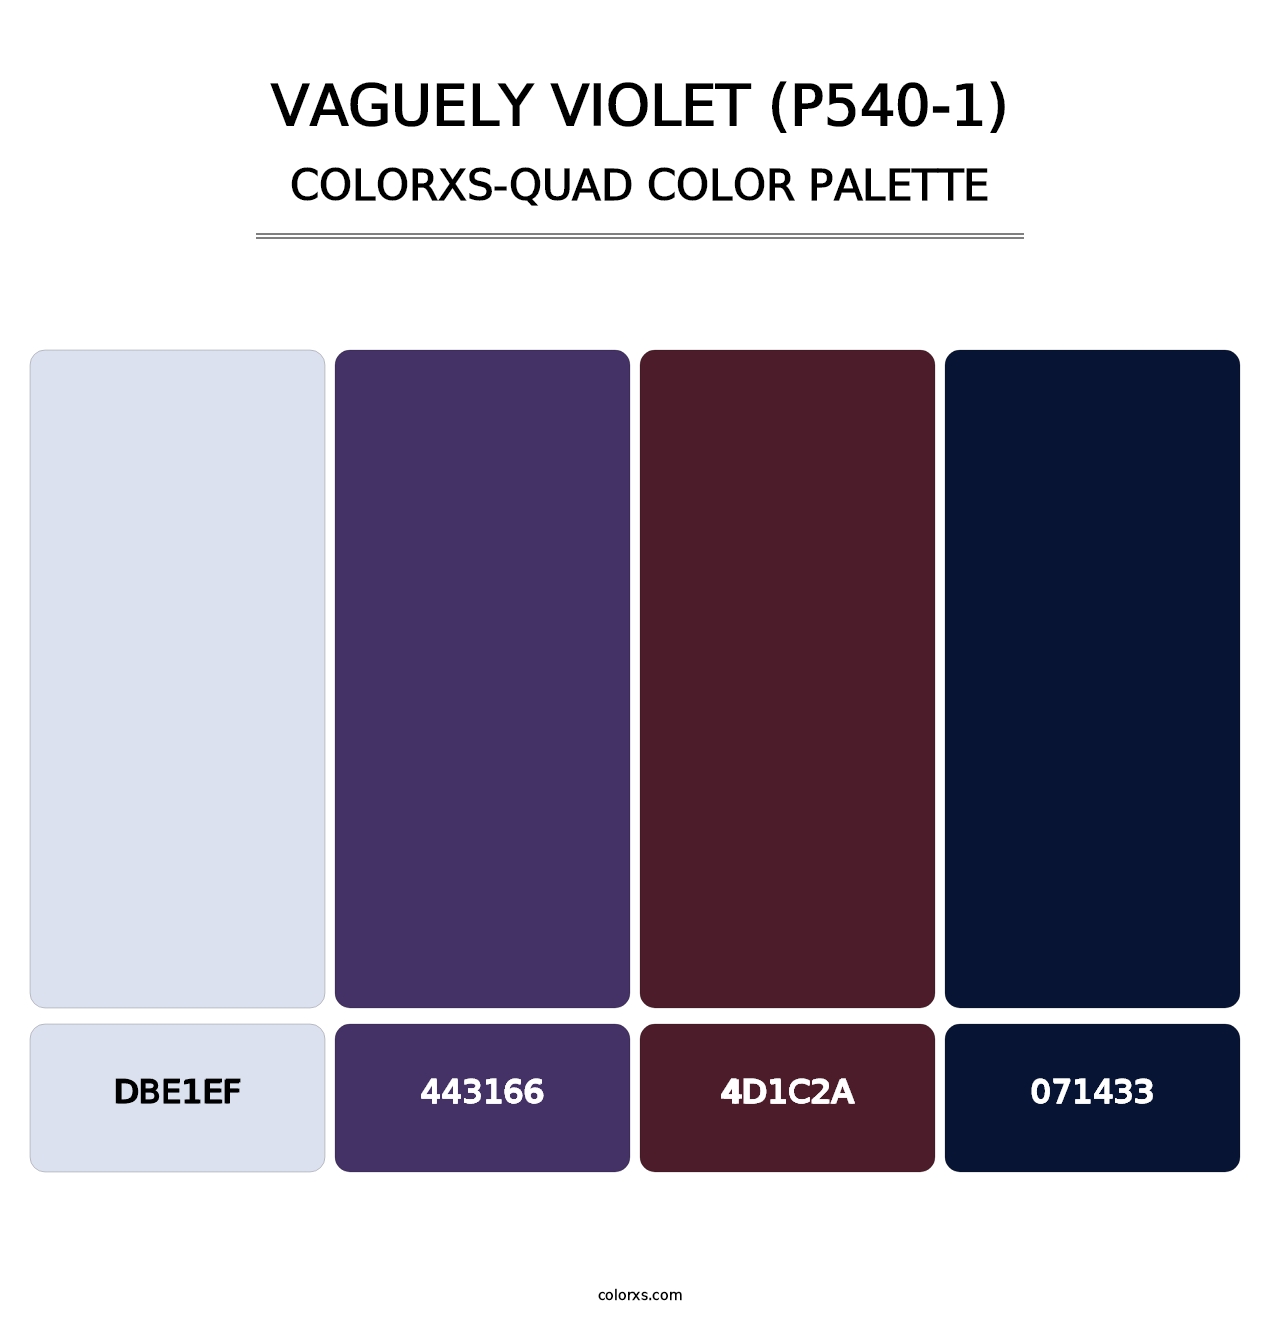 Vaguely Violet (P540-1) - Colorxs Quad Palette